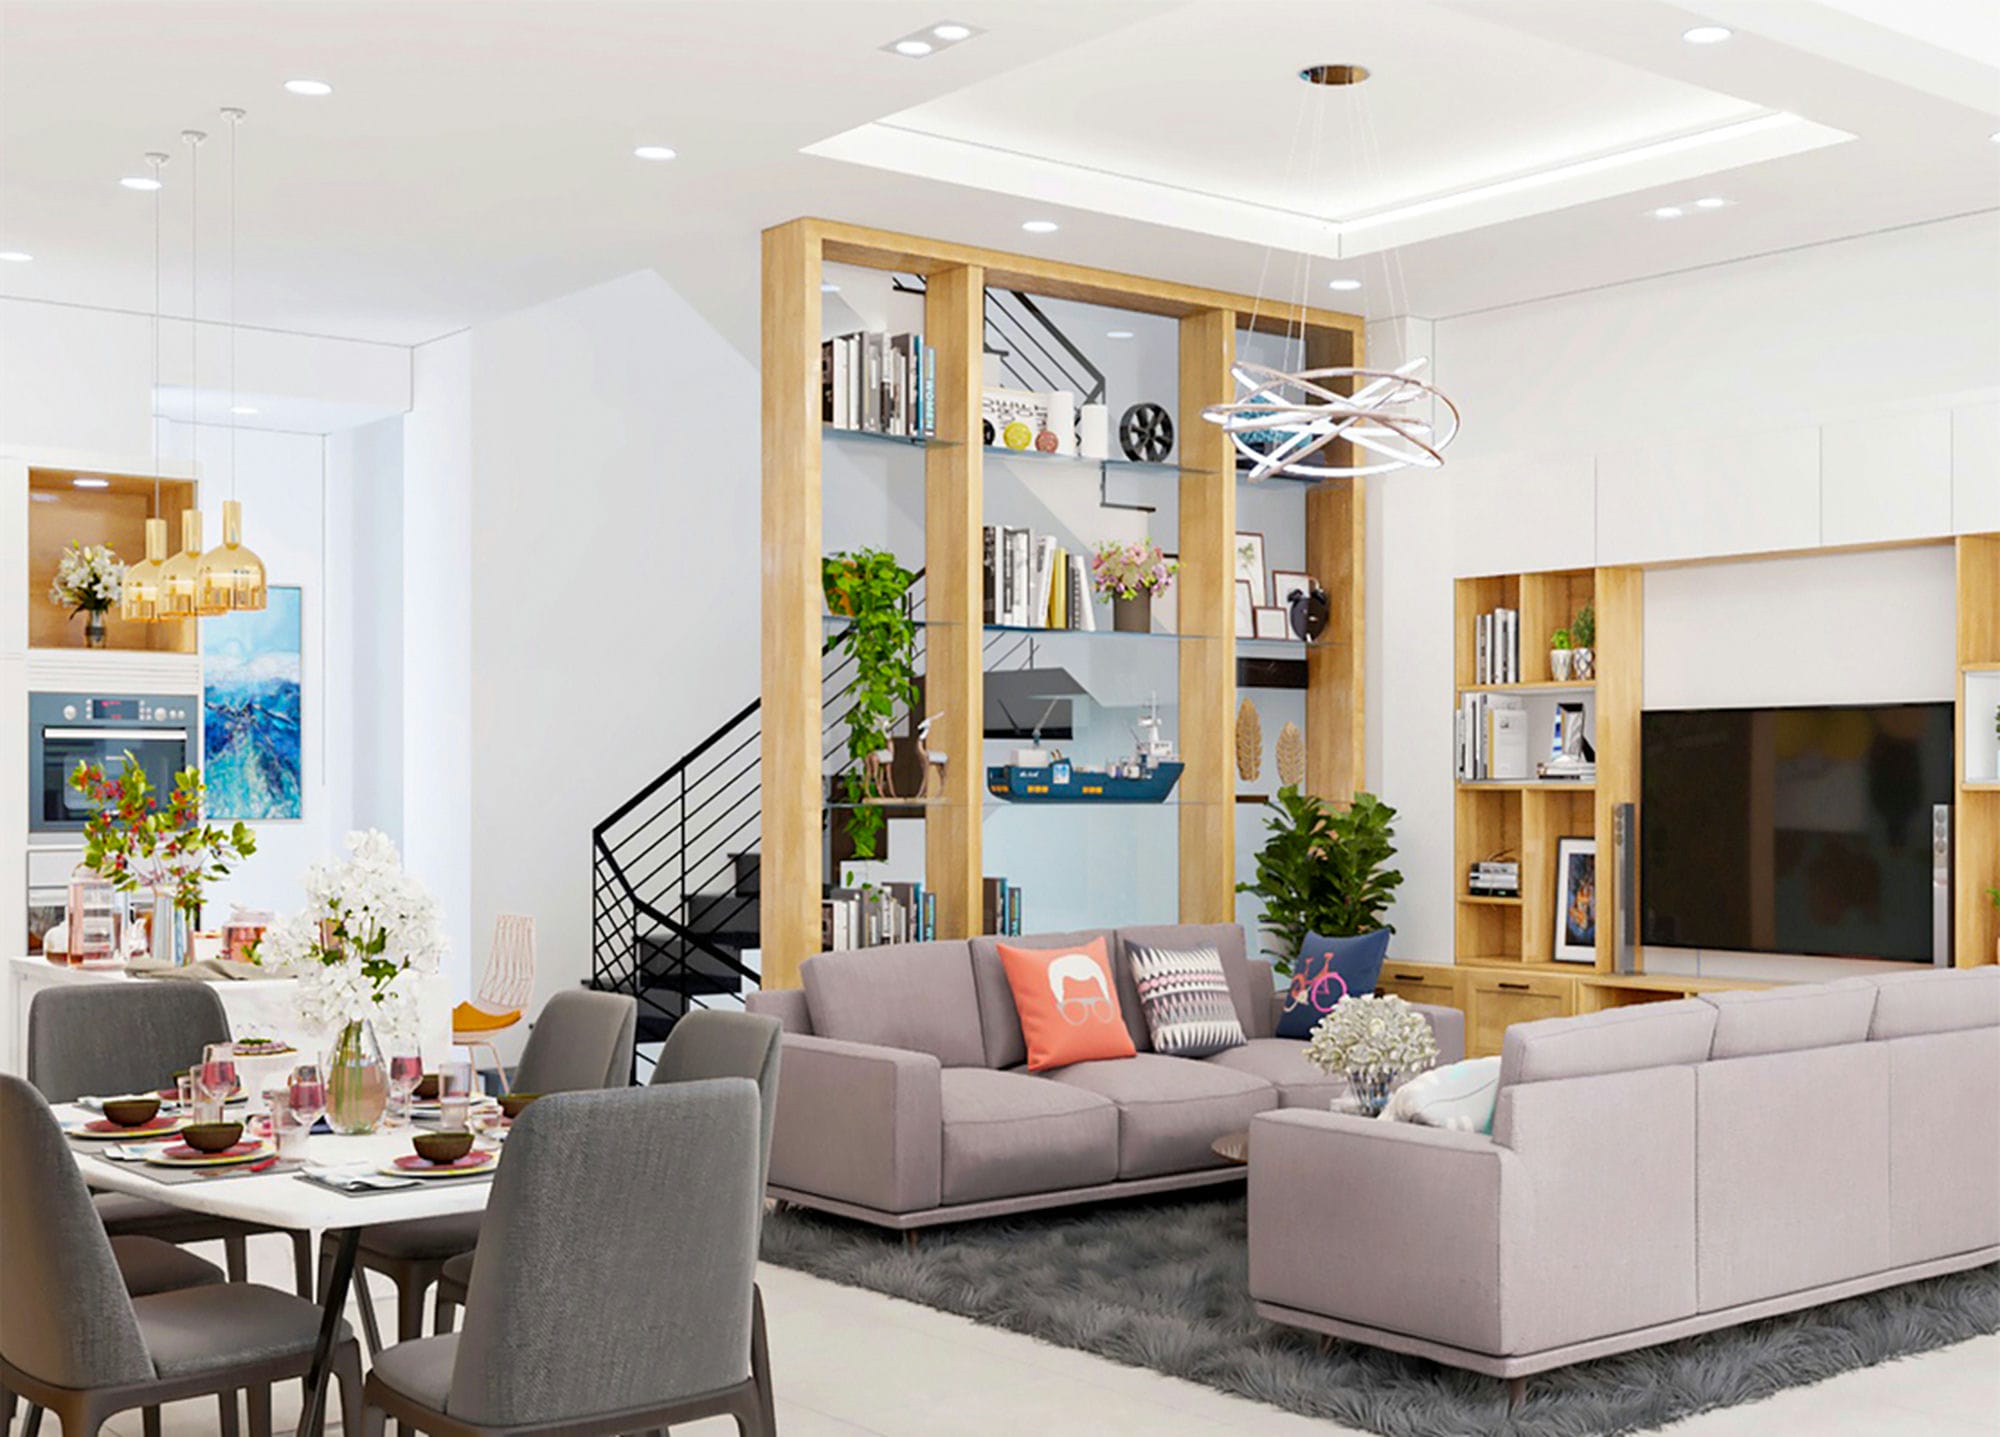 Living Room 3D Design of Ms. Ngoc's House | NTDecor